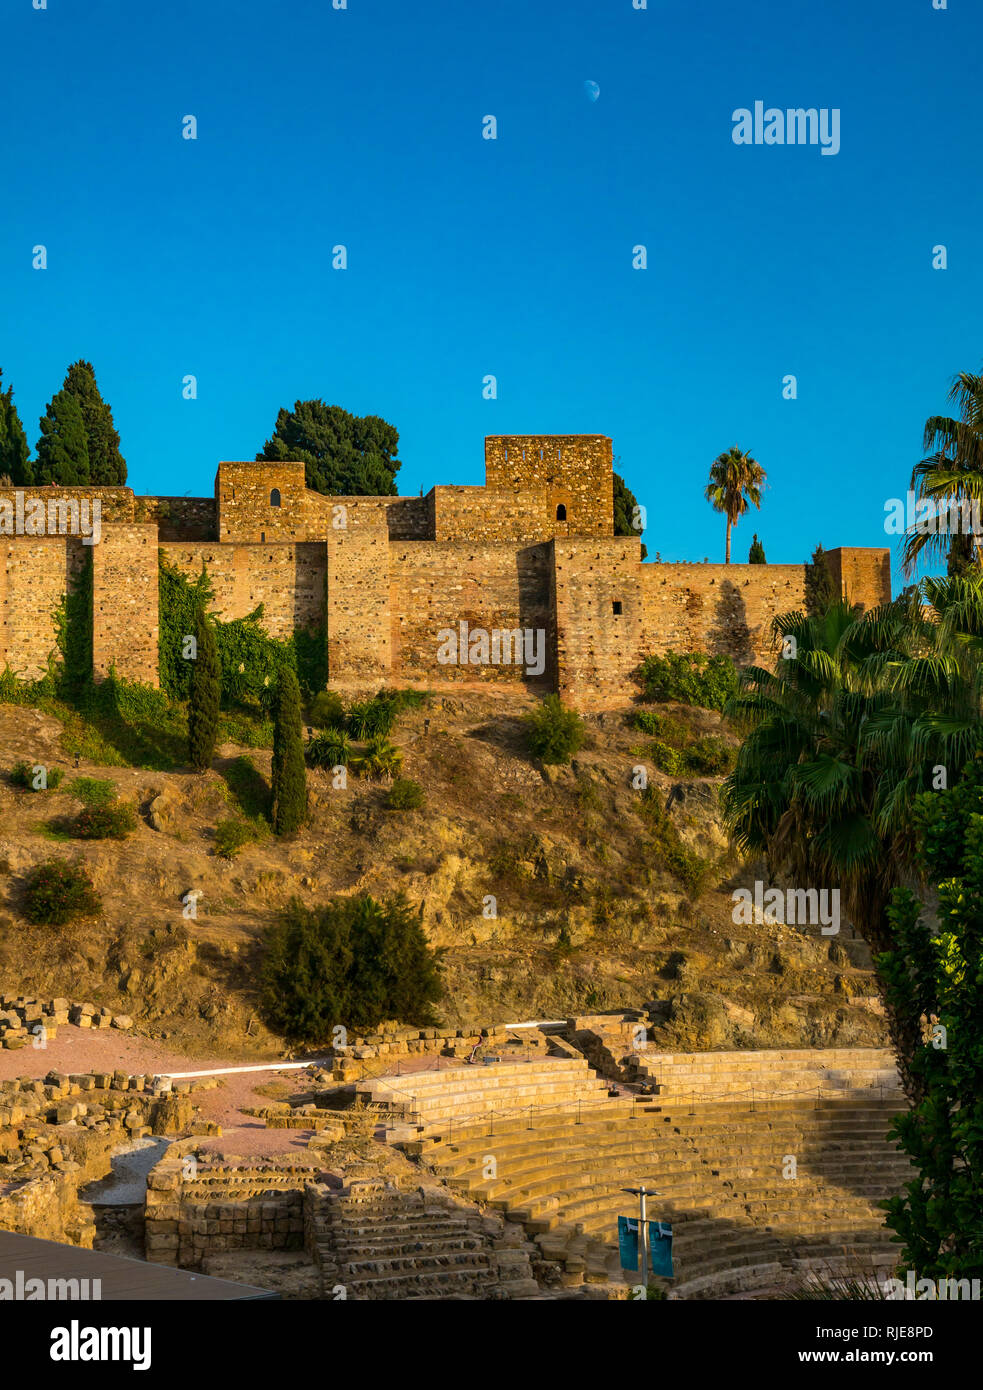 Alcazaba palazzo fortificato di mura al tramonto con la Luna in cielo, Malaga, Spagna Spagna Foto Stock